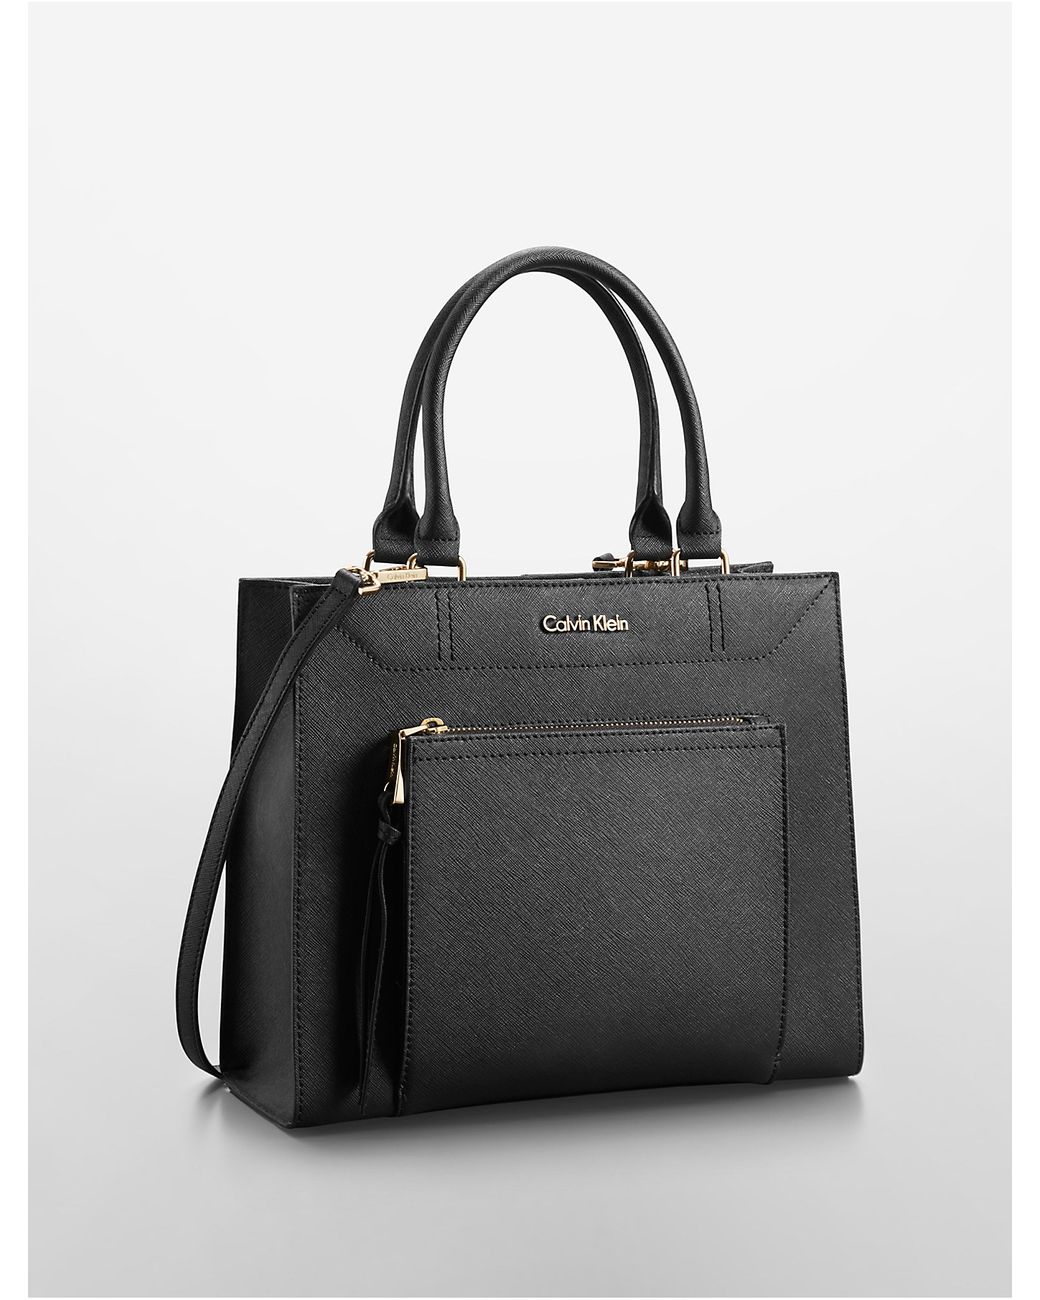 Op te slaan over nauwelijks Calvin Klein Saffiano Leather Small Tote Bag in Black | Lyst